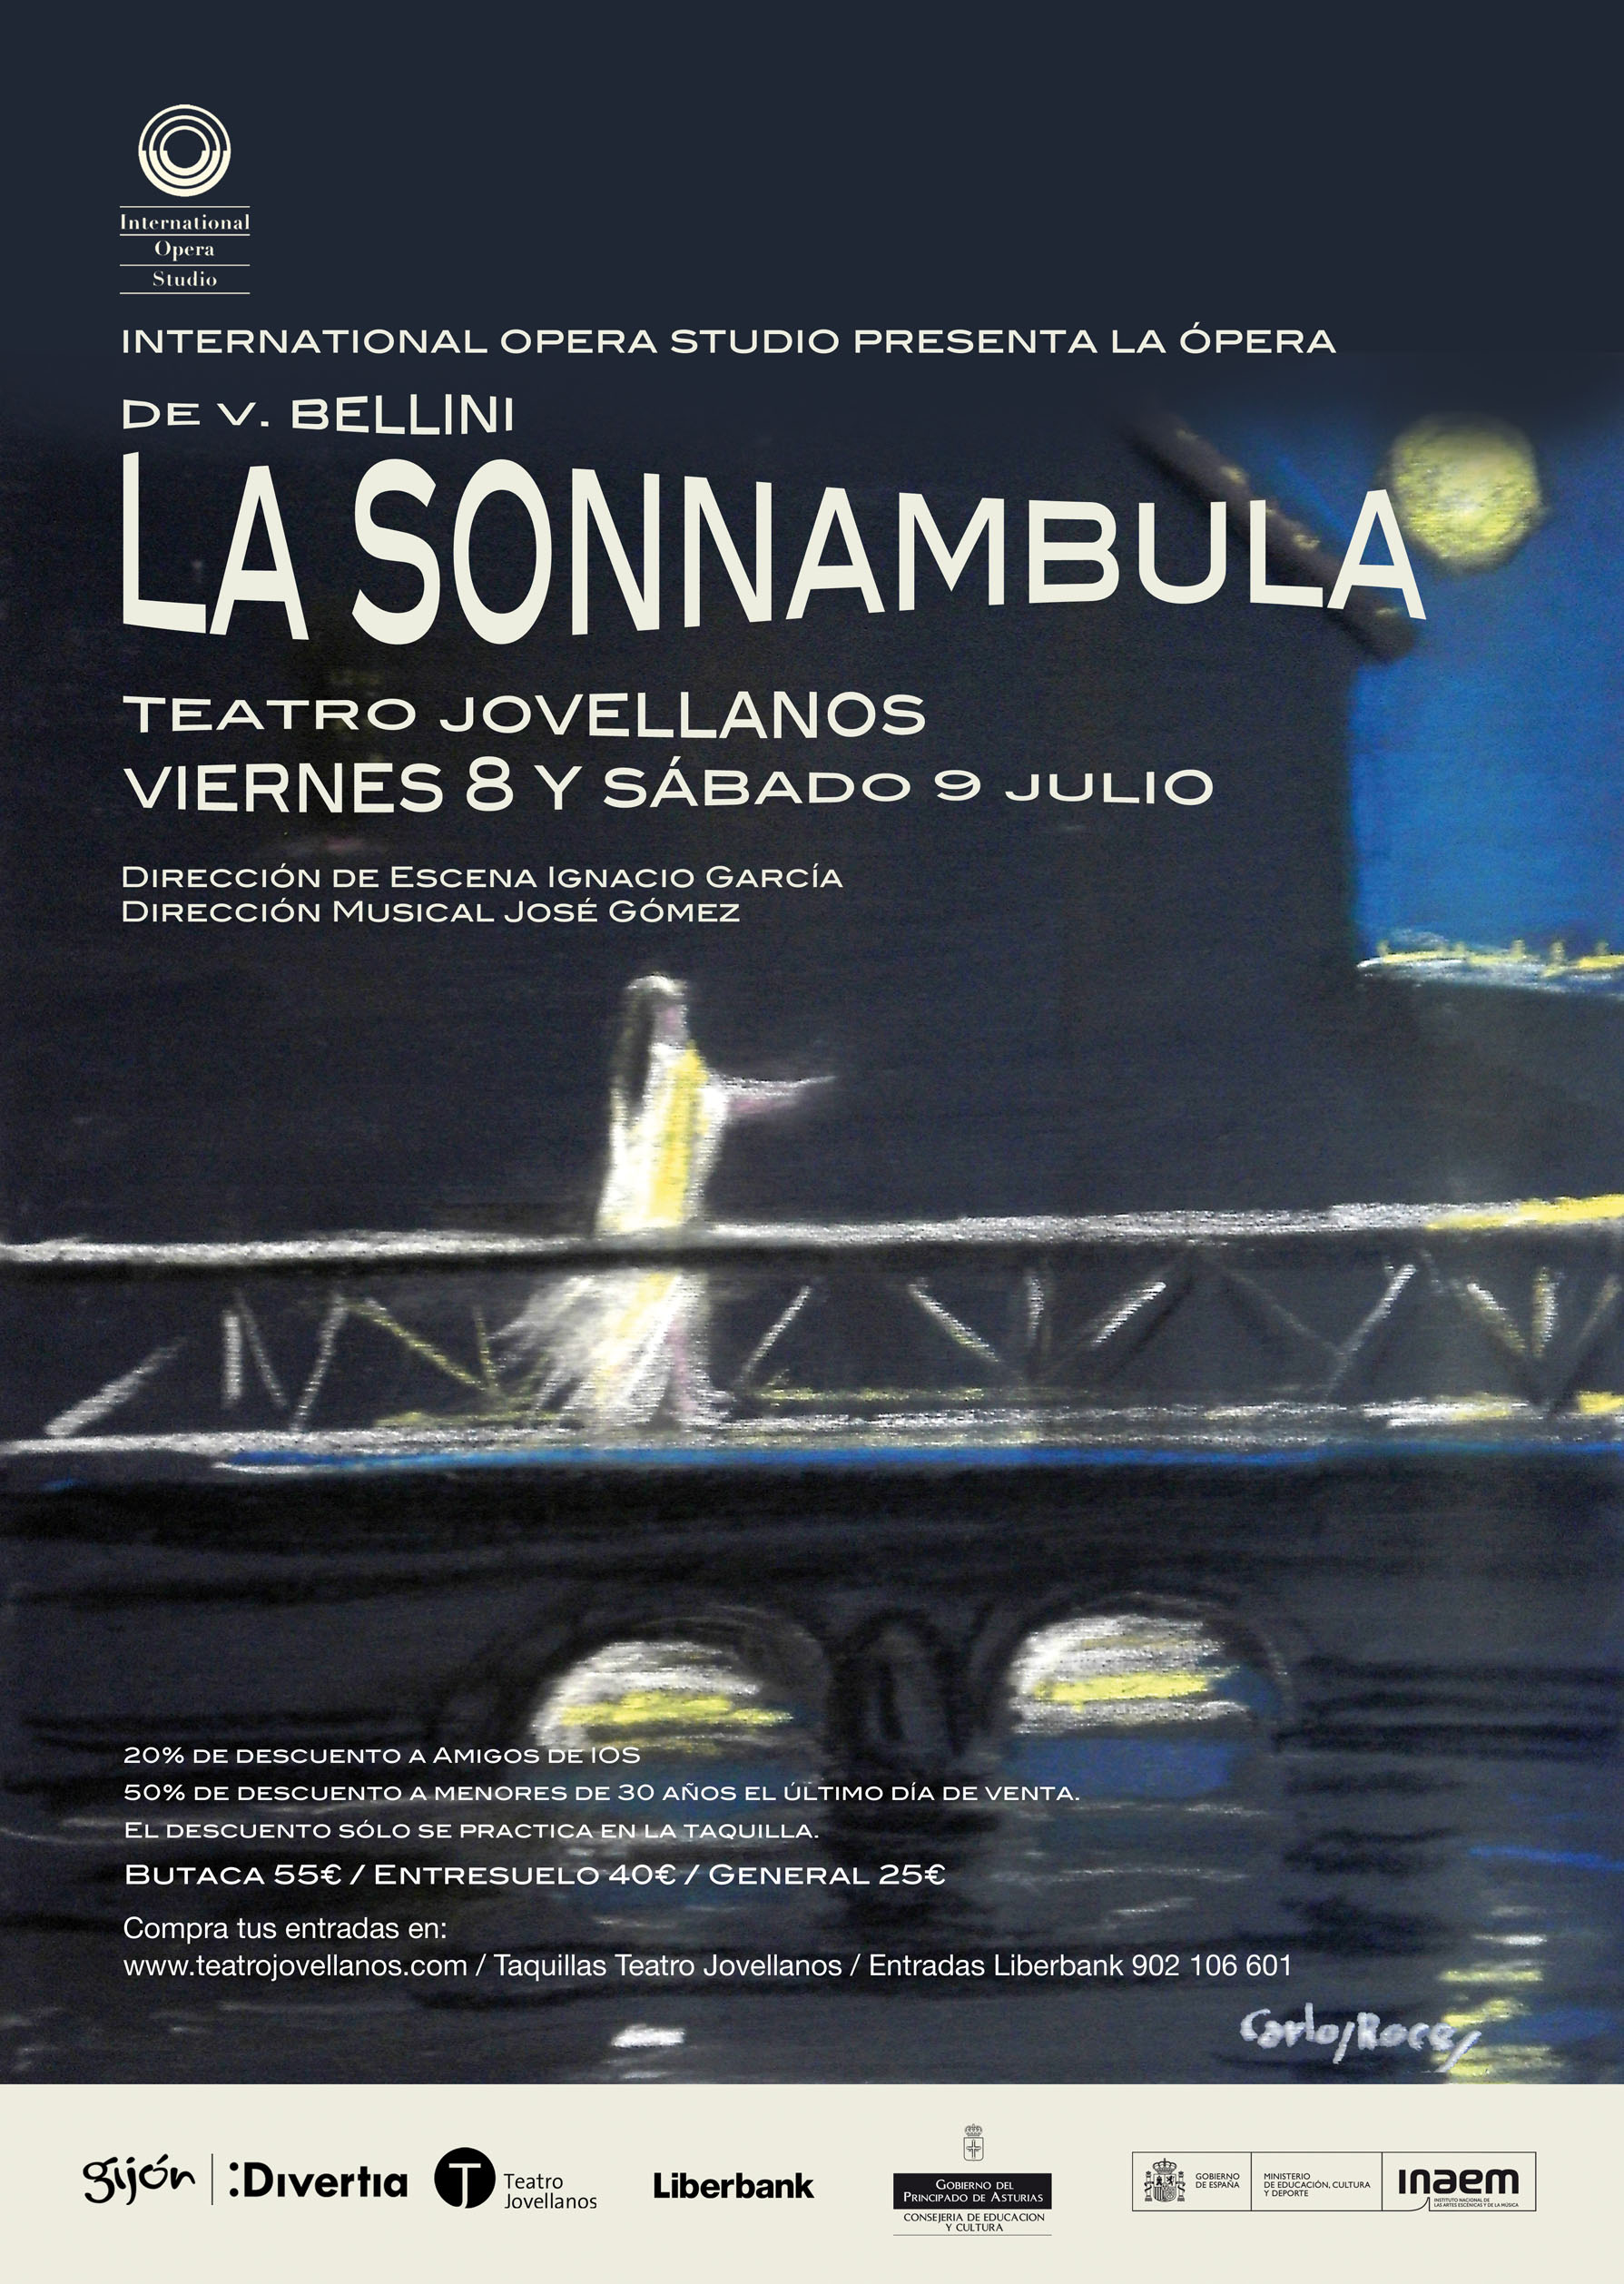  La IOS, dirigida por José Gómez (p.1979), presenta La Sonnambula